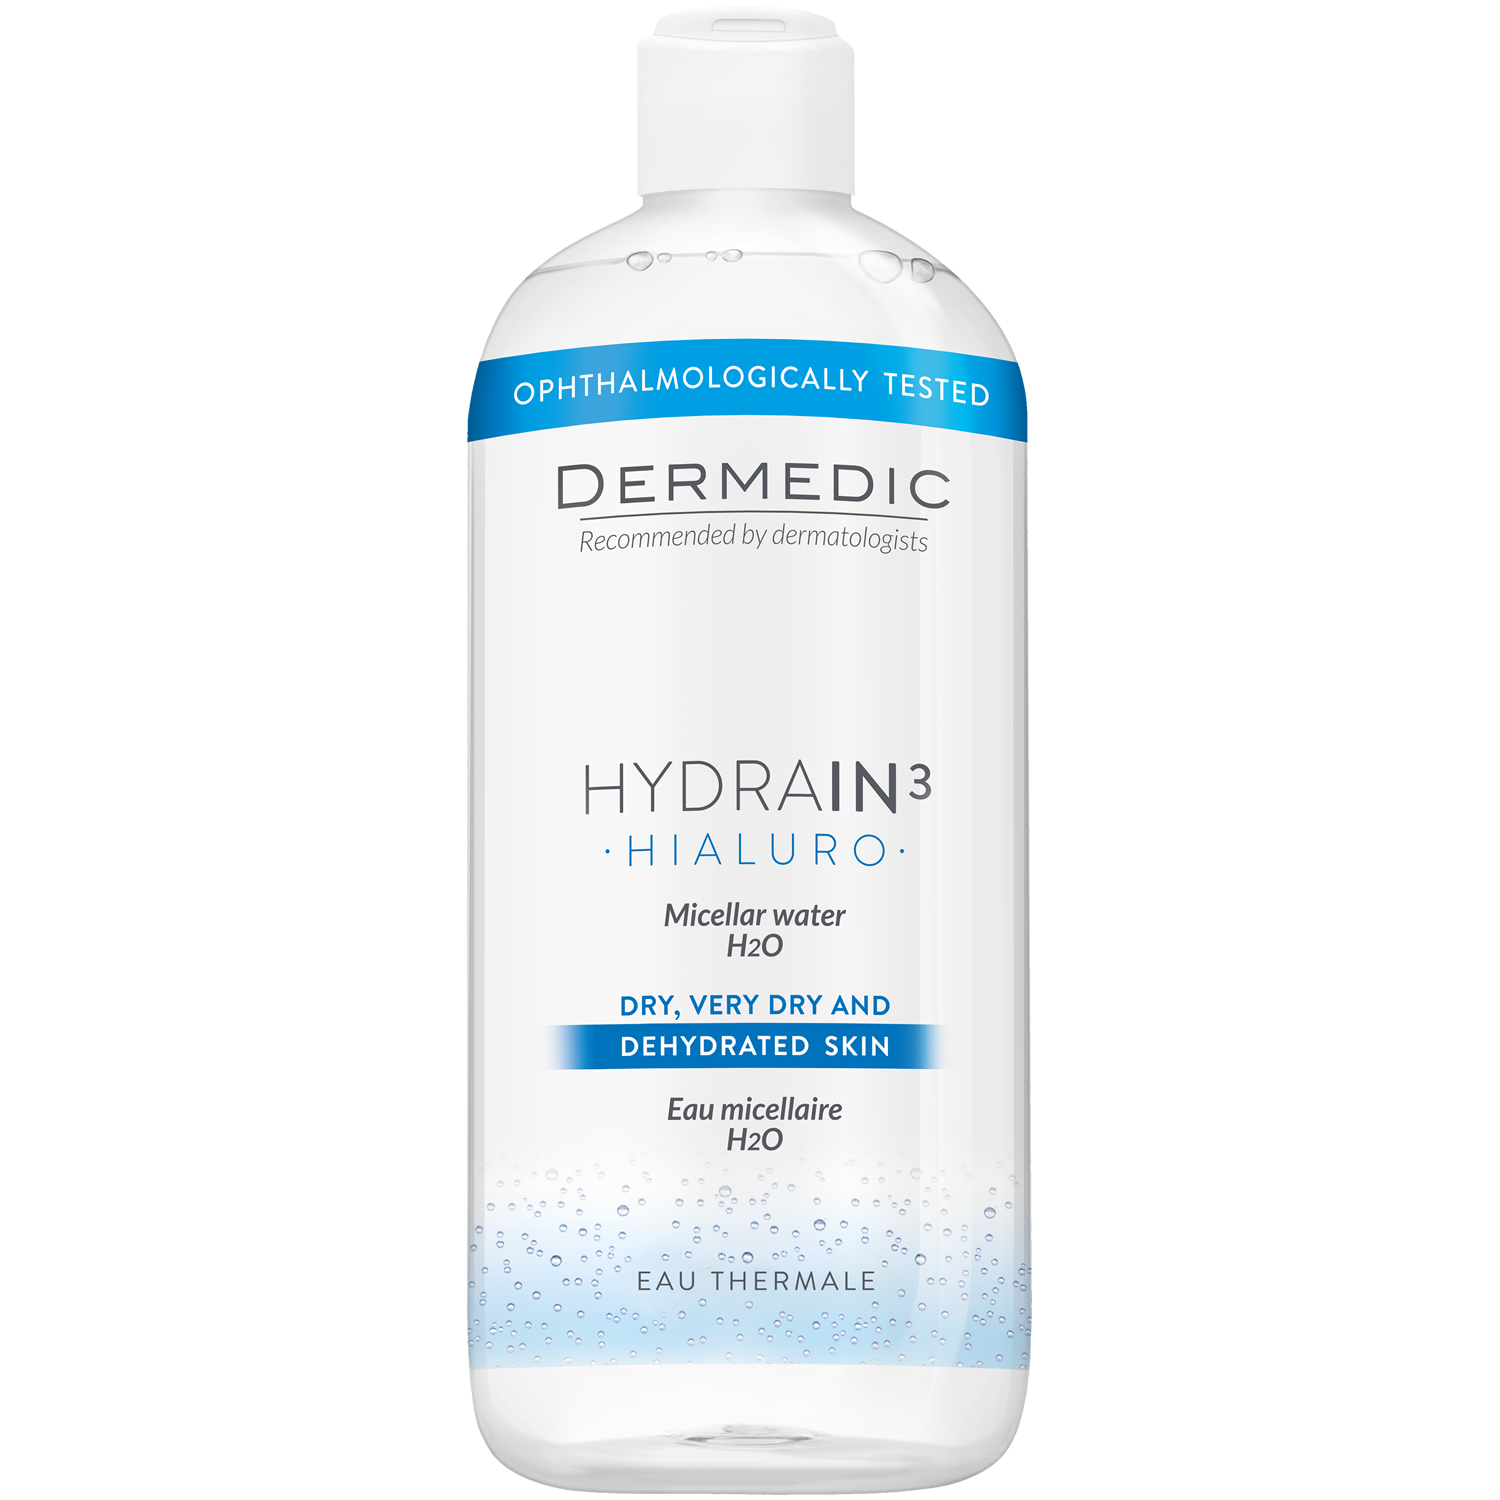 Dermedic Hydrain3 Hialuro мицеллярная вода H2O для лица, 500 мл косметика для мамы dermedic гидрейн 3 гиалуро мицеллярная вода h2o 500 мл